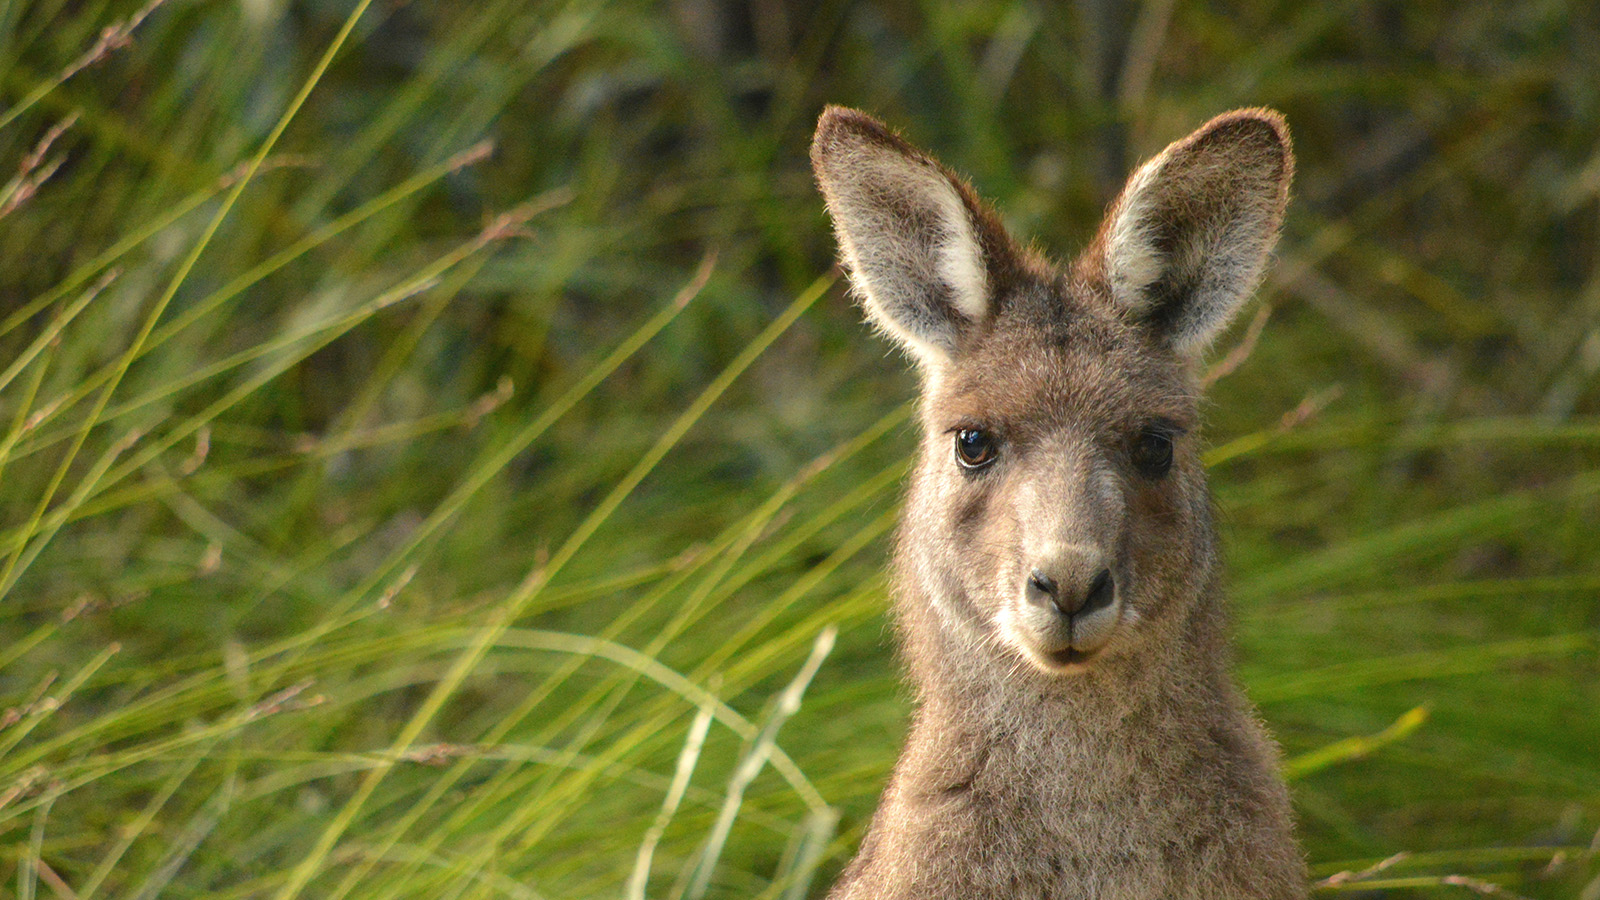 Fauna: Kangaroo